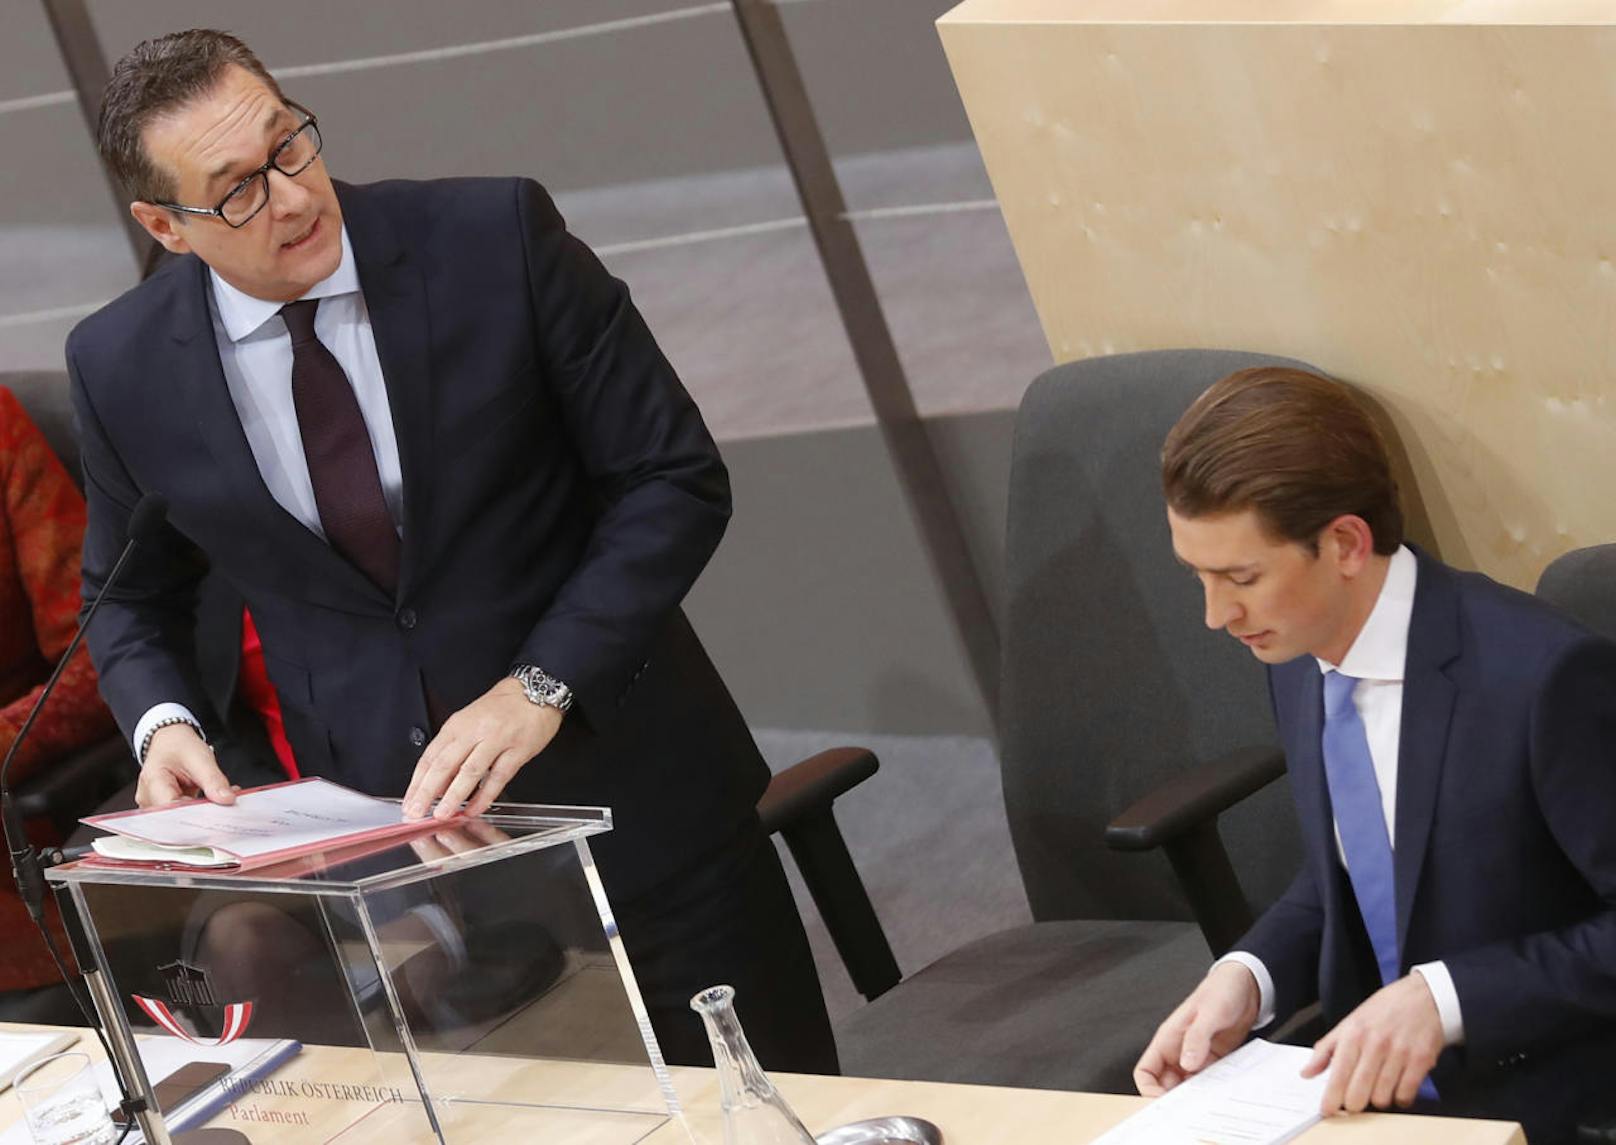 "Das Wahlergebnis hat gezeigt, dass die Österreicher Veränderung wollen", so Strache.